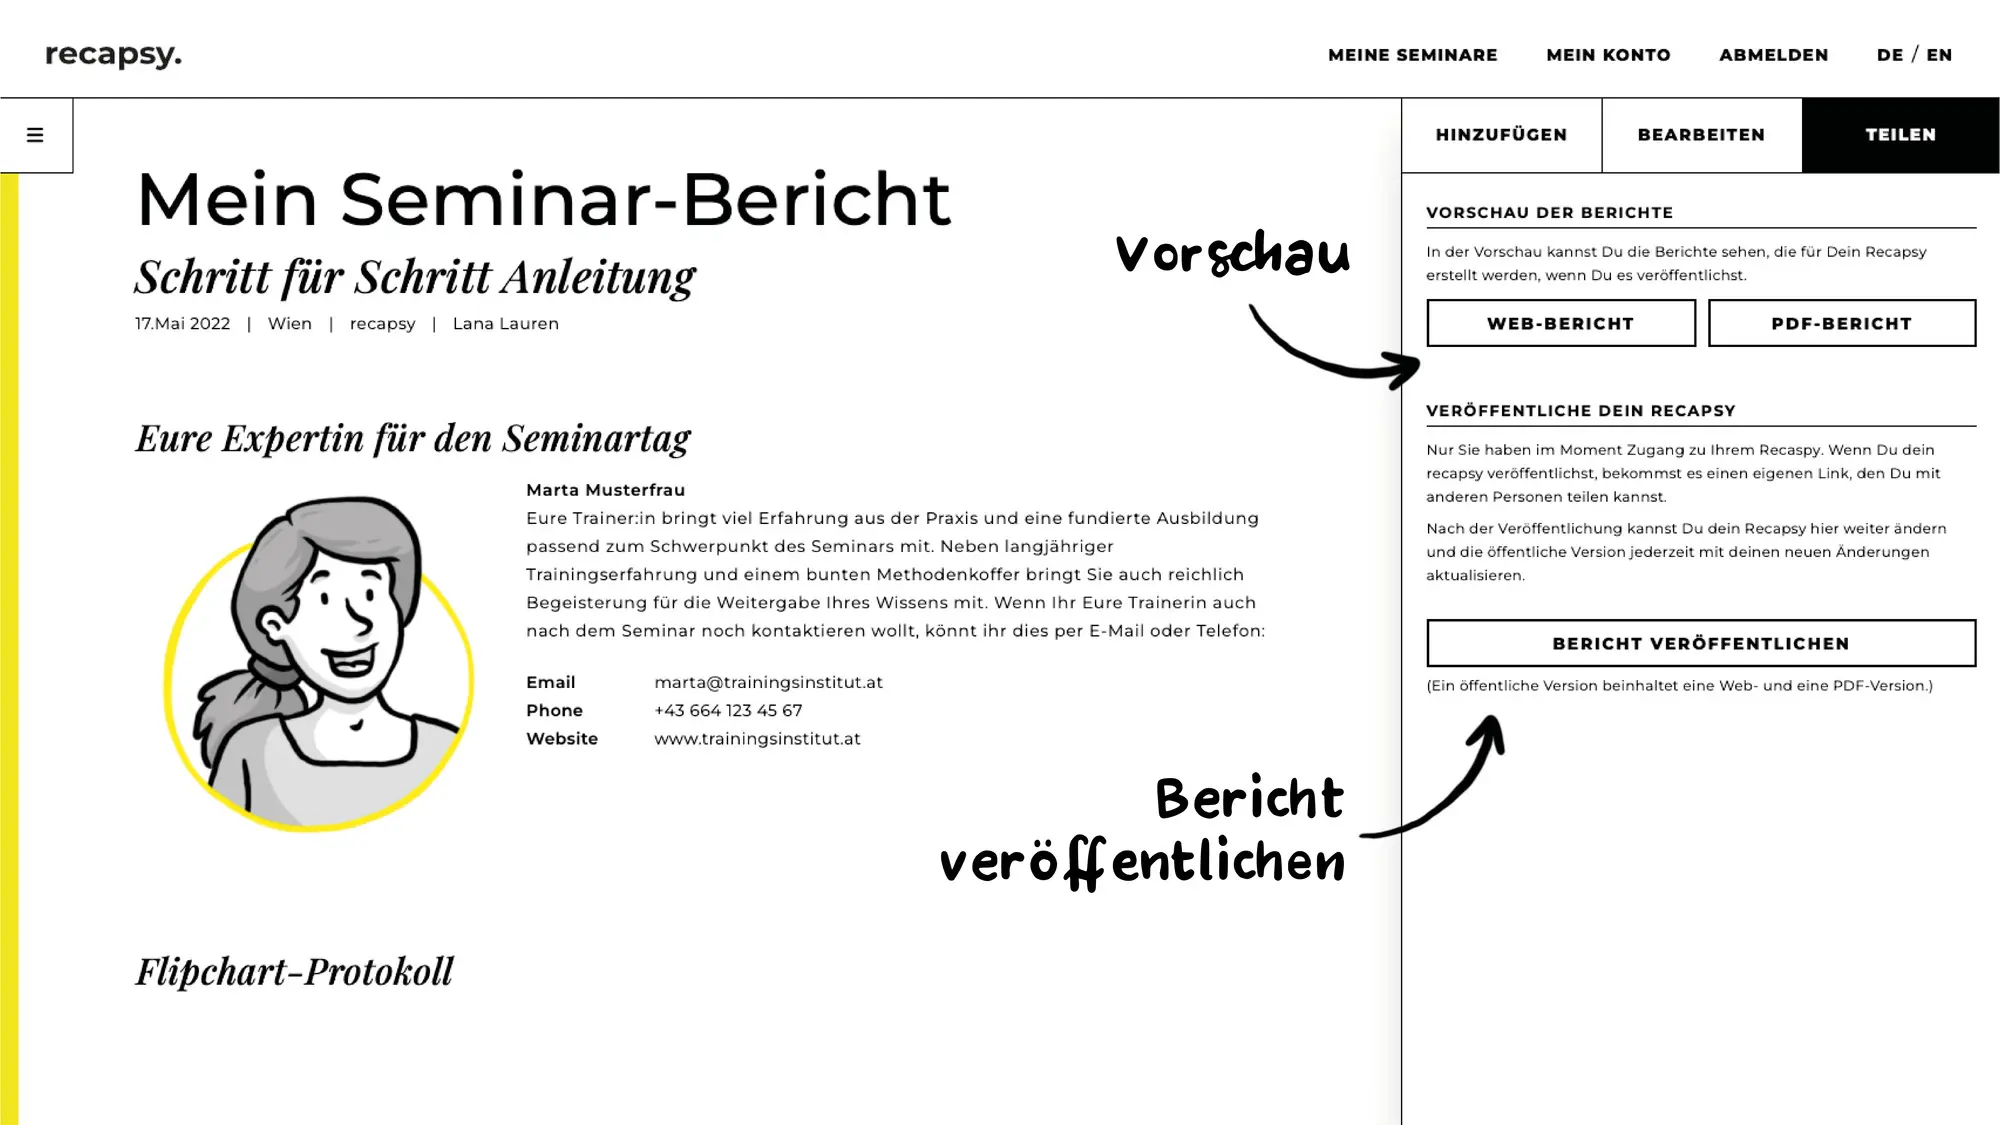 Vorschau des Web-Bericht und PDF-Bericht des Seminar-Bericht